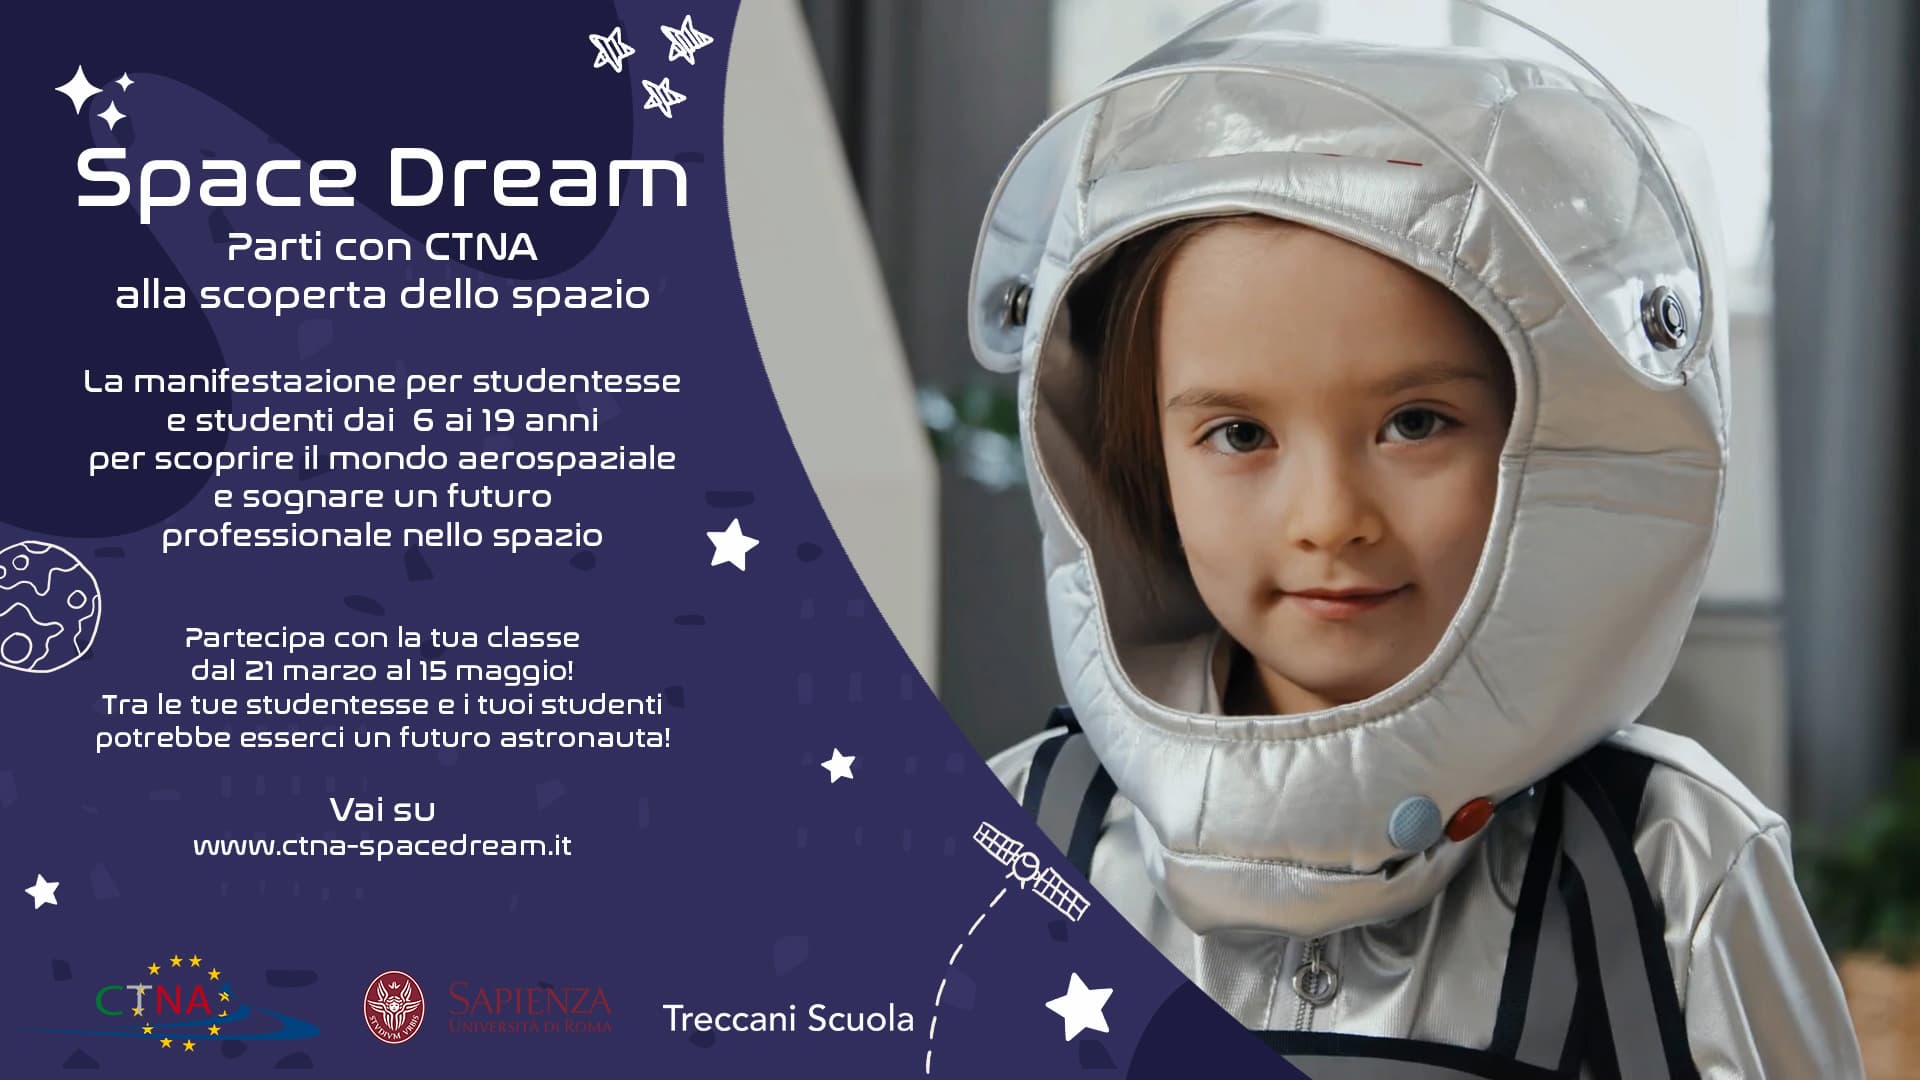 ASI - Torna “Space Dream”, l’iniziativa di CTNA con l’Università “La Sapienza” per portare le scuole nello spazio